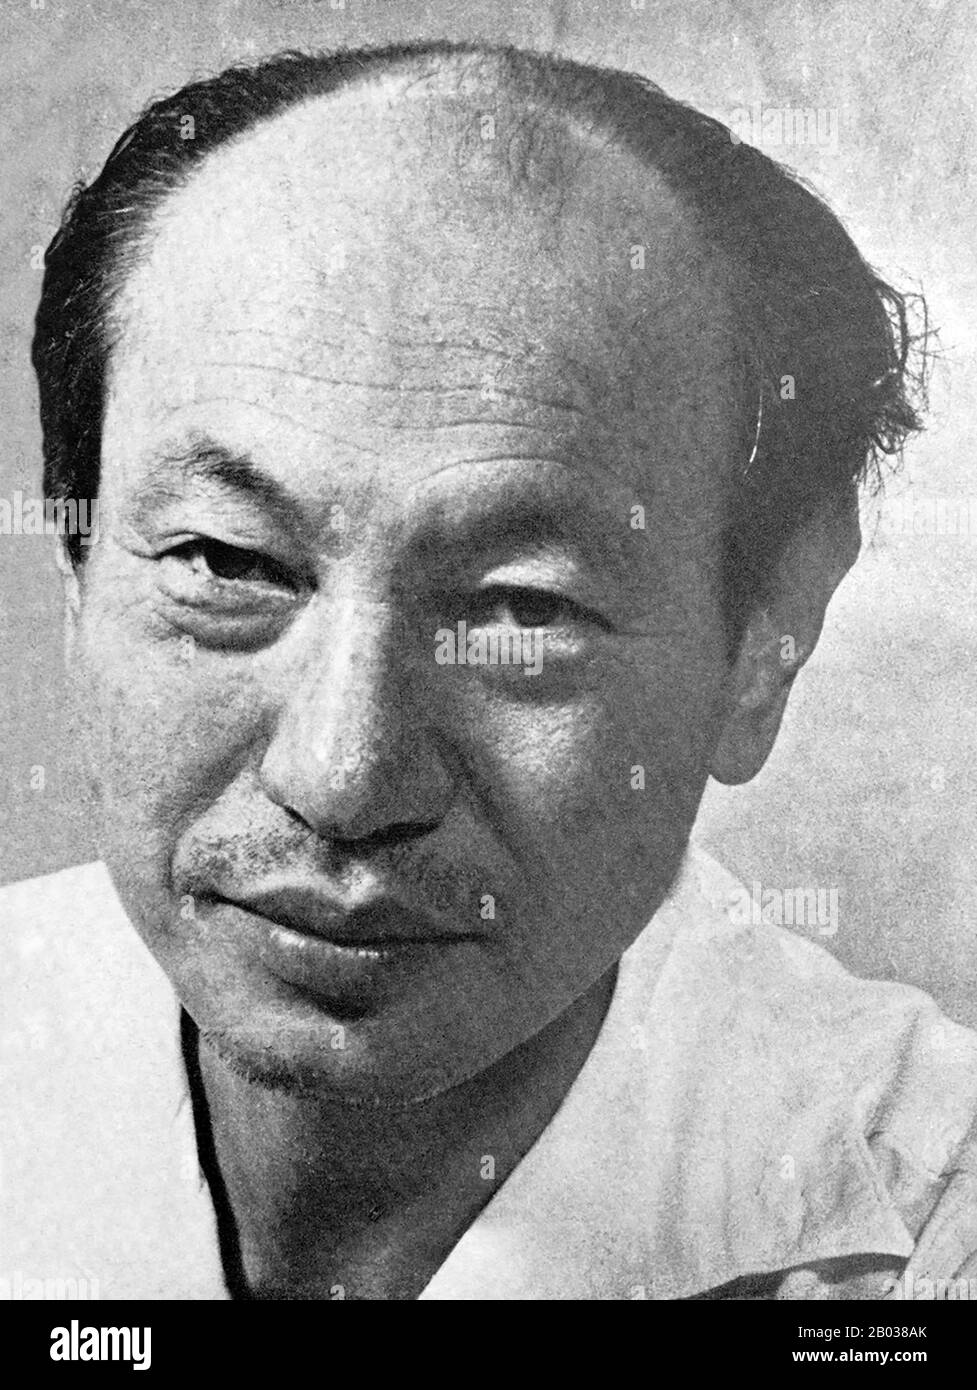 Tokuda Kyuschi (* 12. September 1894 in Japan; † 14. Oktober 1953) war ein japanischer Politiker und von 1945 bis zu seinem Tod 1953 erster Vorsitzender der Kommunistischen Partei Japans. Er wurde 1894 in Okinawa geboren und wurde 1920 Rechtsanwalt, bevor er 1922 der Kommunistischen Partei Japans beitrat. Tokuda wurde im Jahr 1928 verhaftet, weil er den Verdacht hatte, gegen das Friedensgesetz der Regierung verstoßen zu haben, und die nächsten 18 Jahre im Gefängnis verbracht und eine Zelle neben dem kommunistischen Führer Yoshio Shiga besetzt hatte. Er wurde mit dem Ende des zweiten Weltkriegs und dem Zusammenbruch des kaiserlichen Japan 1945 freigelassen und 1946 gewählt Stockfoto